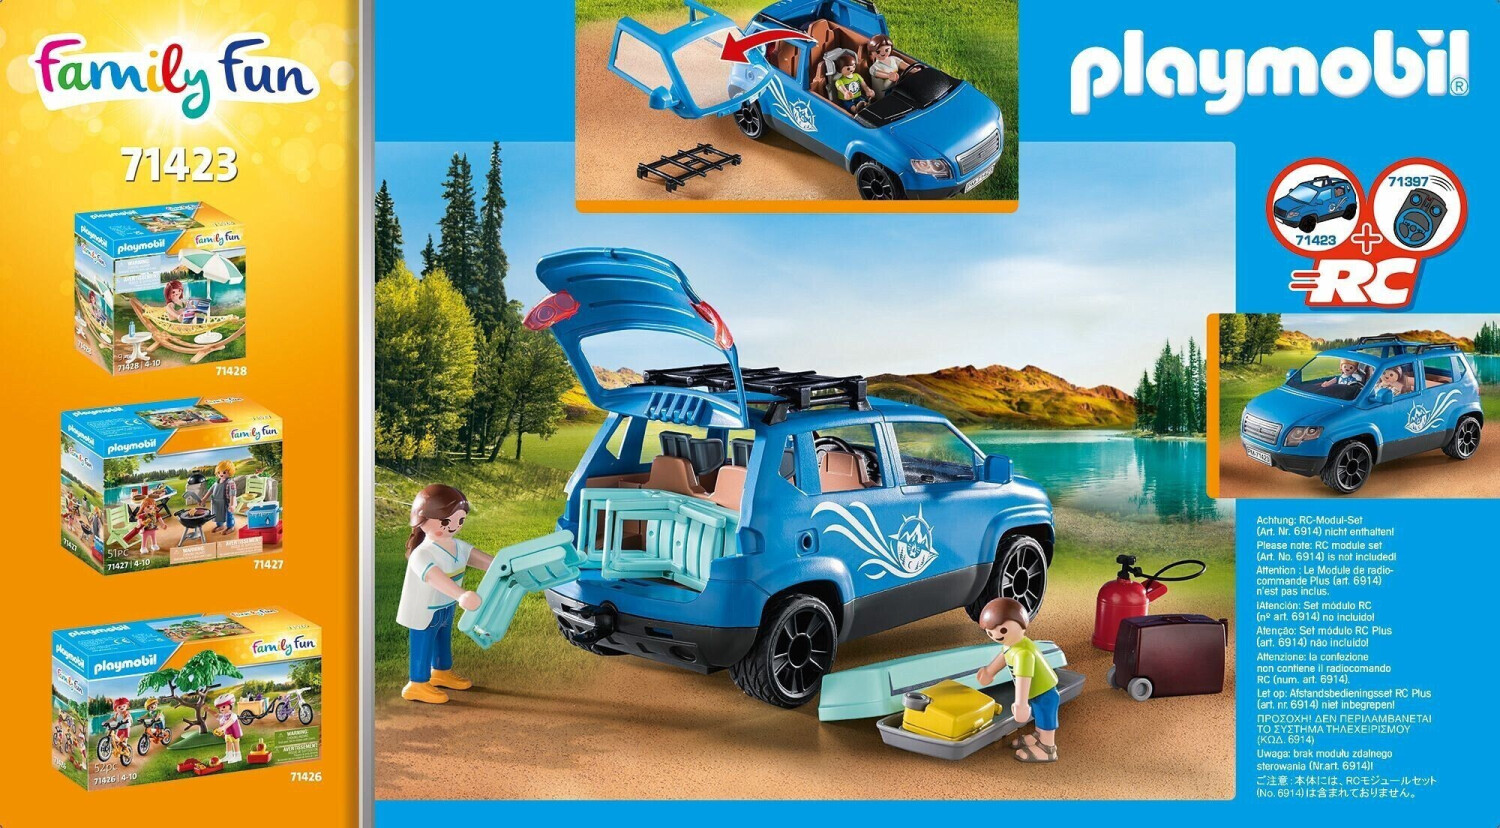 Playmobil - 70285 - papa avec enfant et voiture cabriolet - La Poste